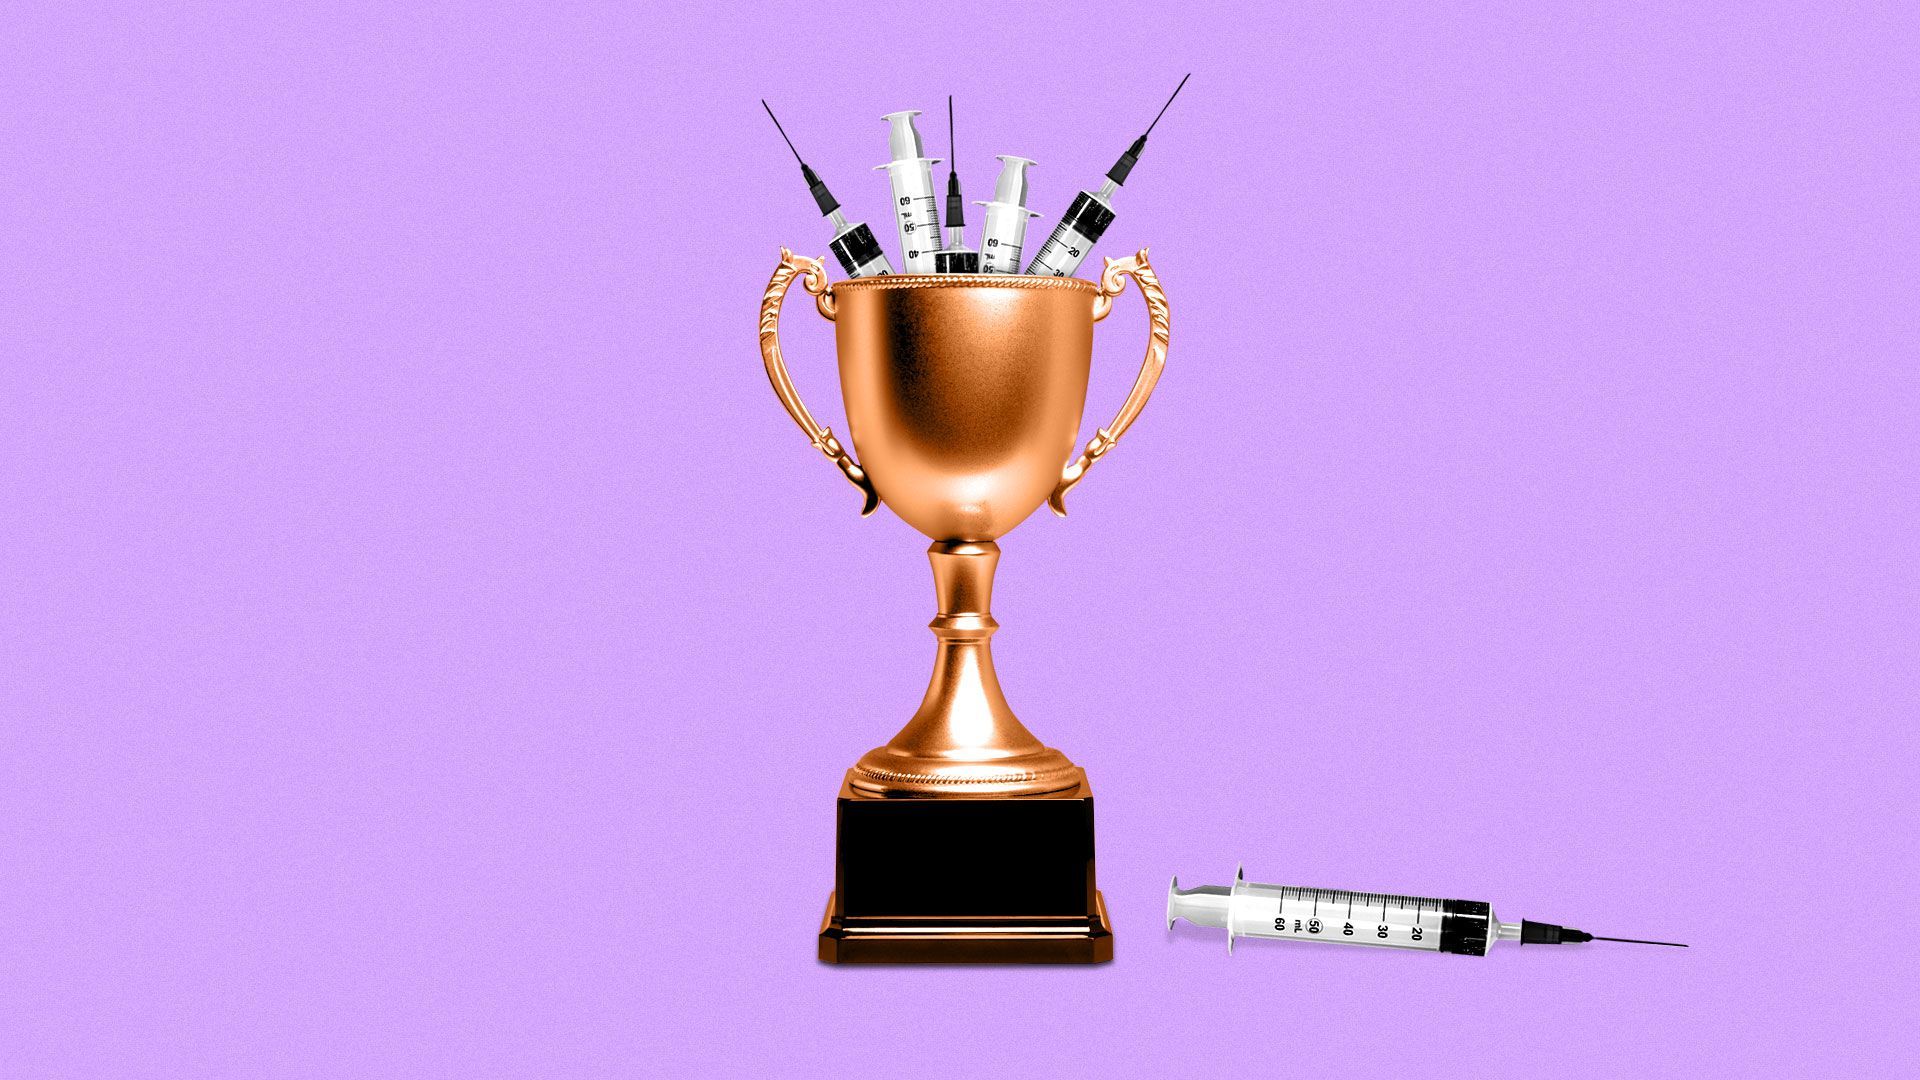 Illustration of trophy filled with syringes